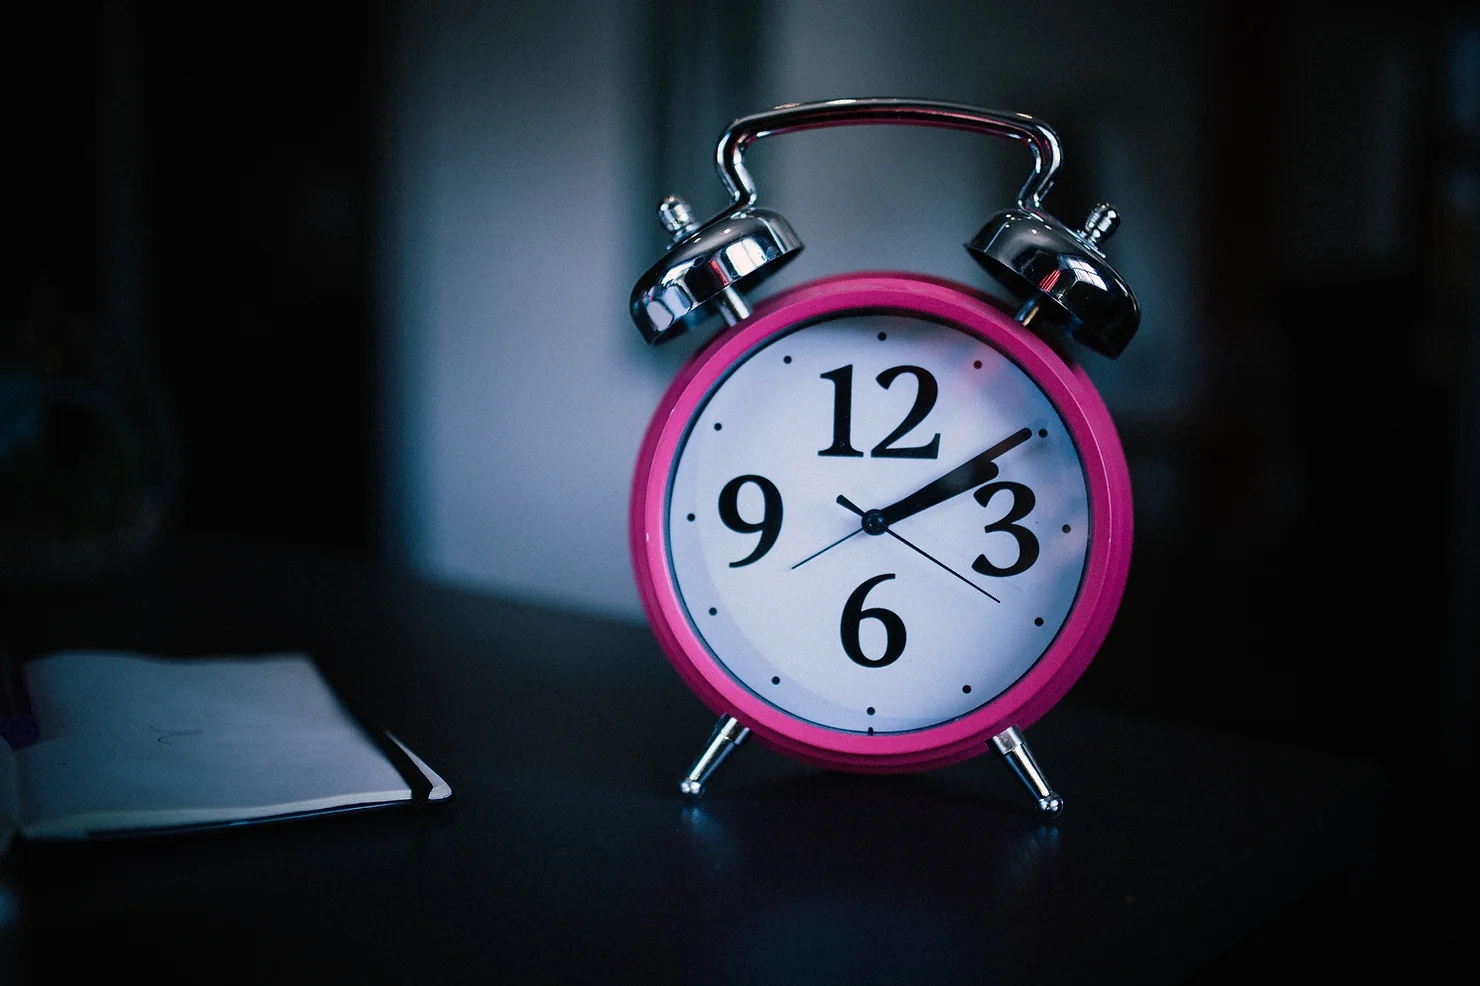 Giấc ngủ của tuổi "teen": Vì sao thanh thiếu niên mê thức khuya dậy muộn?